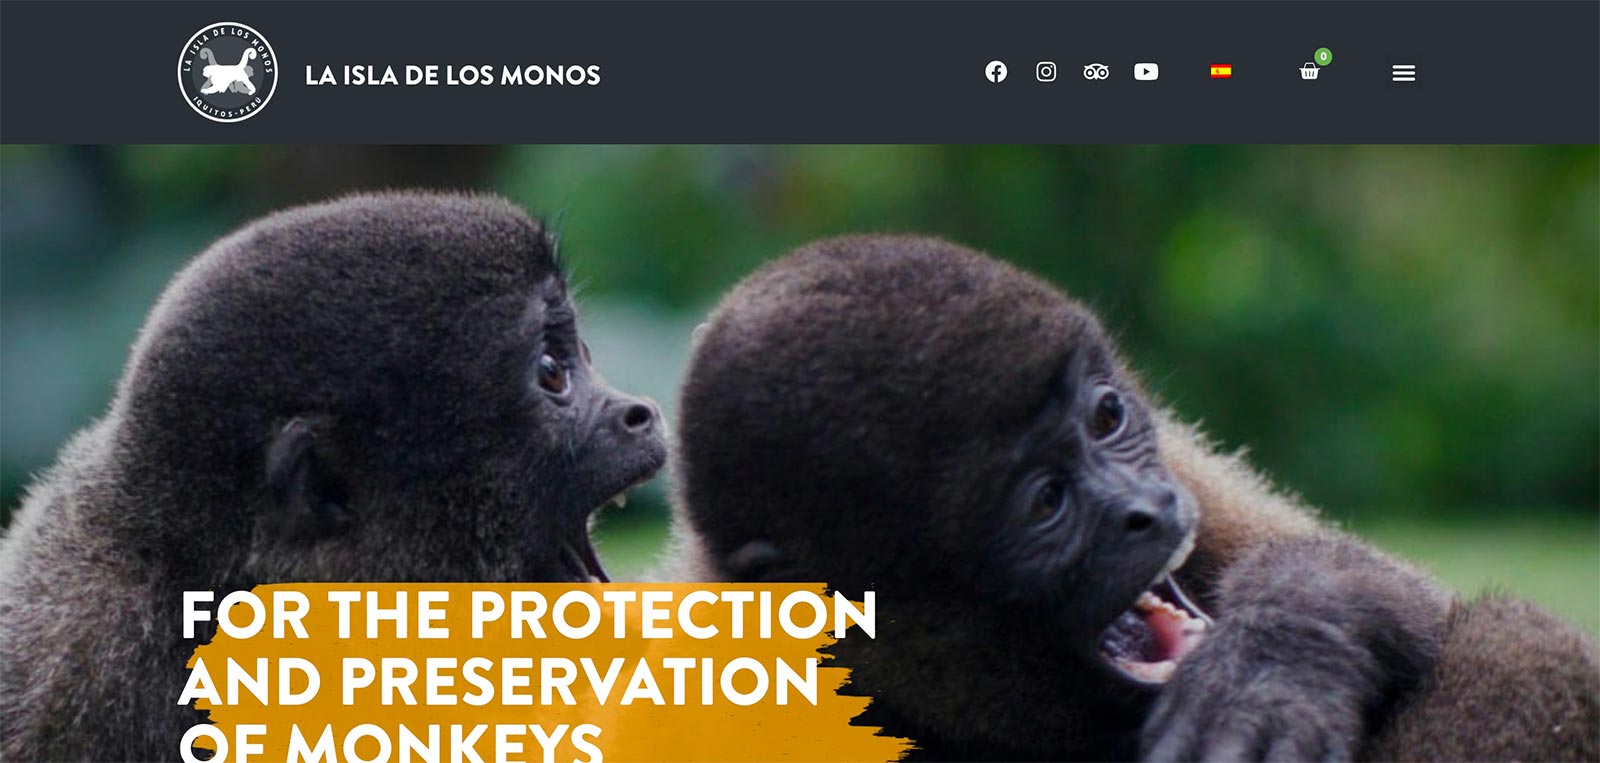 La Isla de los Monos website by BE Business